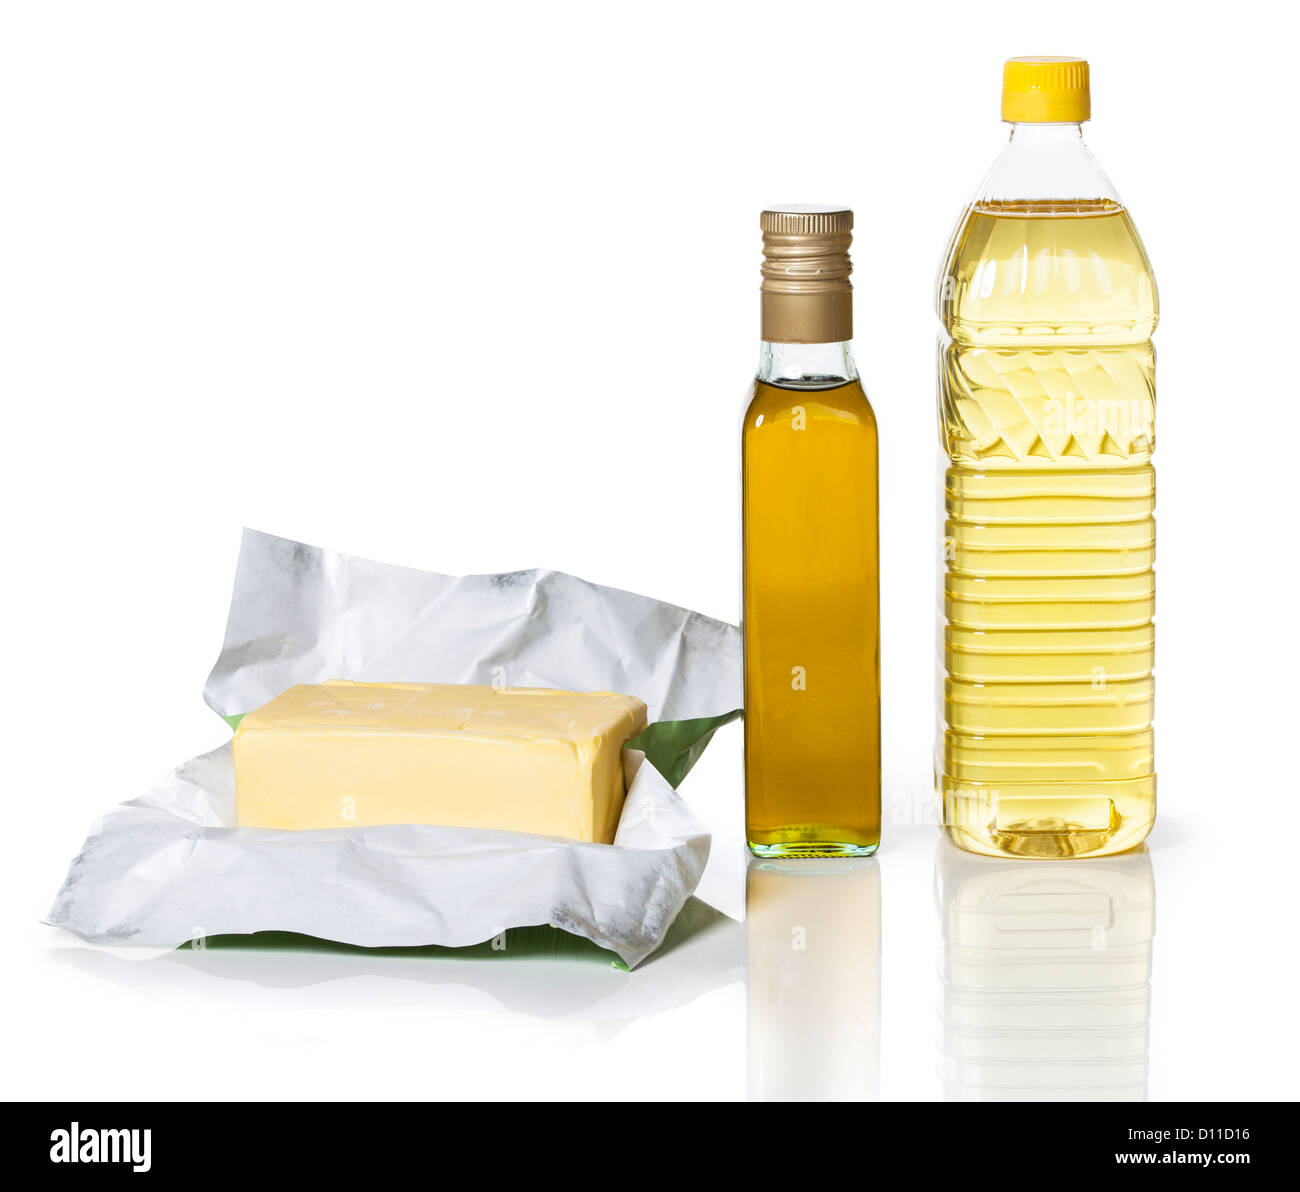 Burro in carta e due bottiglie di diversi tipi di olio su sfondo bianco Foto Stock